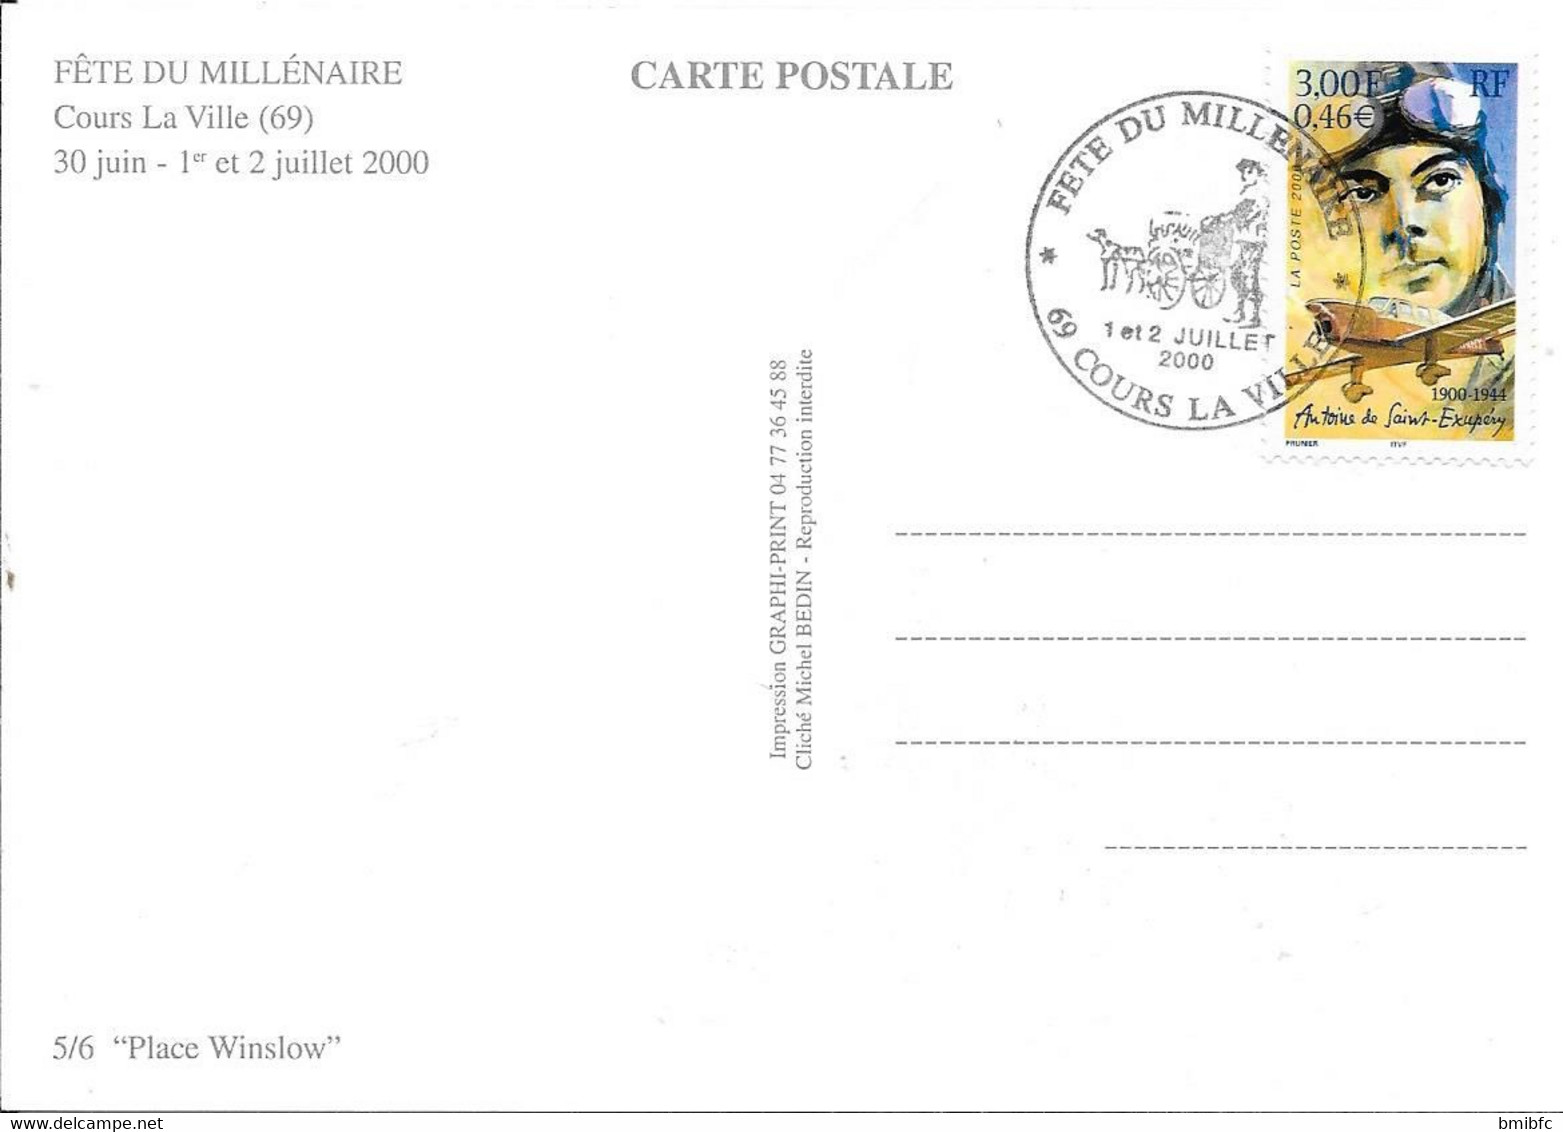 Fête du MILLÉNAIRE - COURS LA VILLE (69) 30 juin-1er et 2 juillet 2000 -  Pochette de 6 cartes postales souvenir